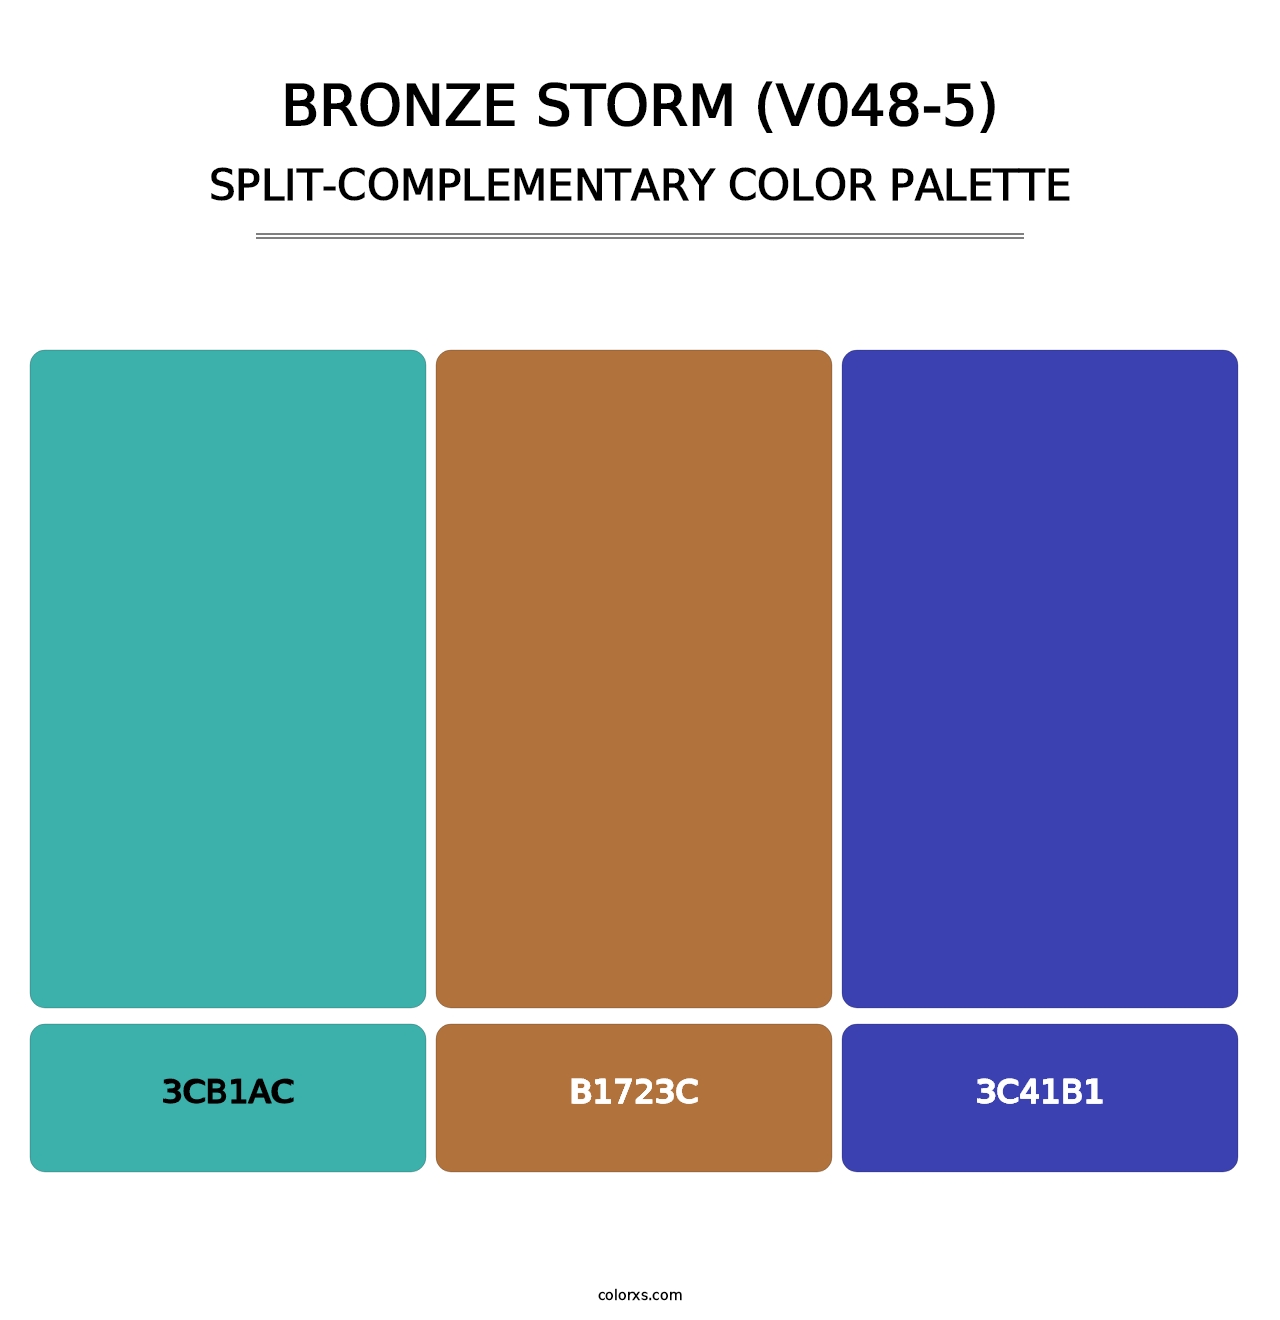 Bronze Storm (V048-5) - Split-Complementary Color Palette